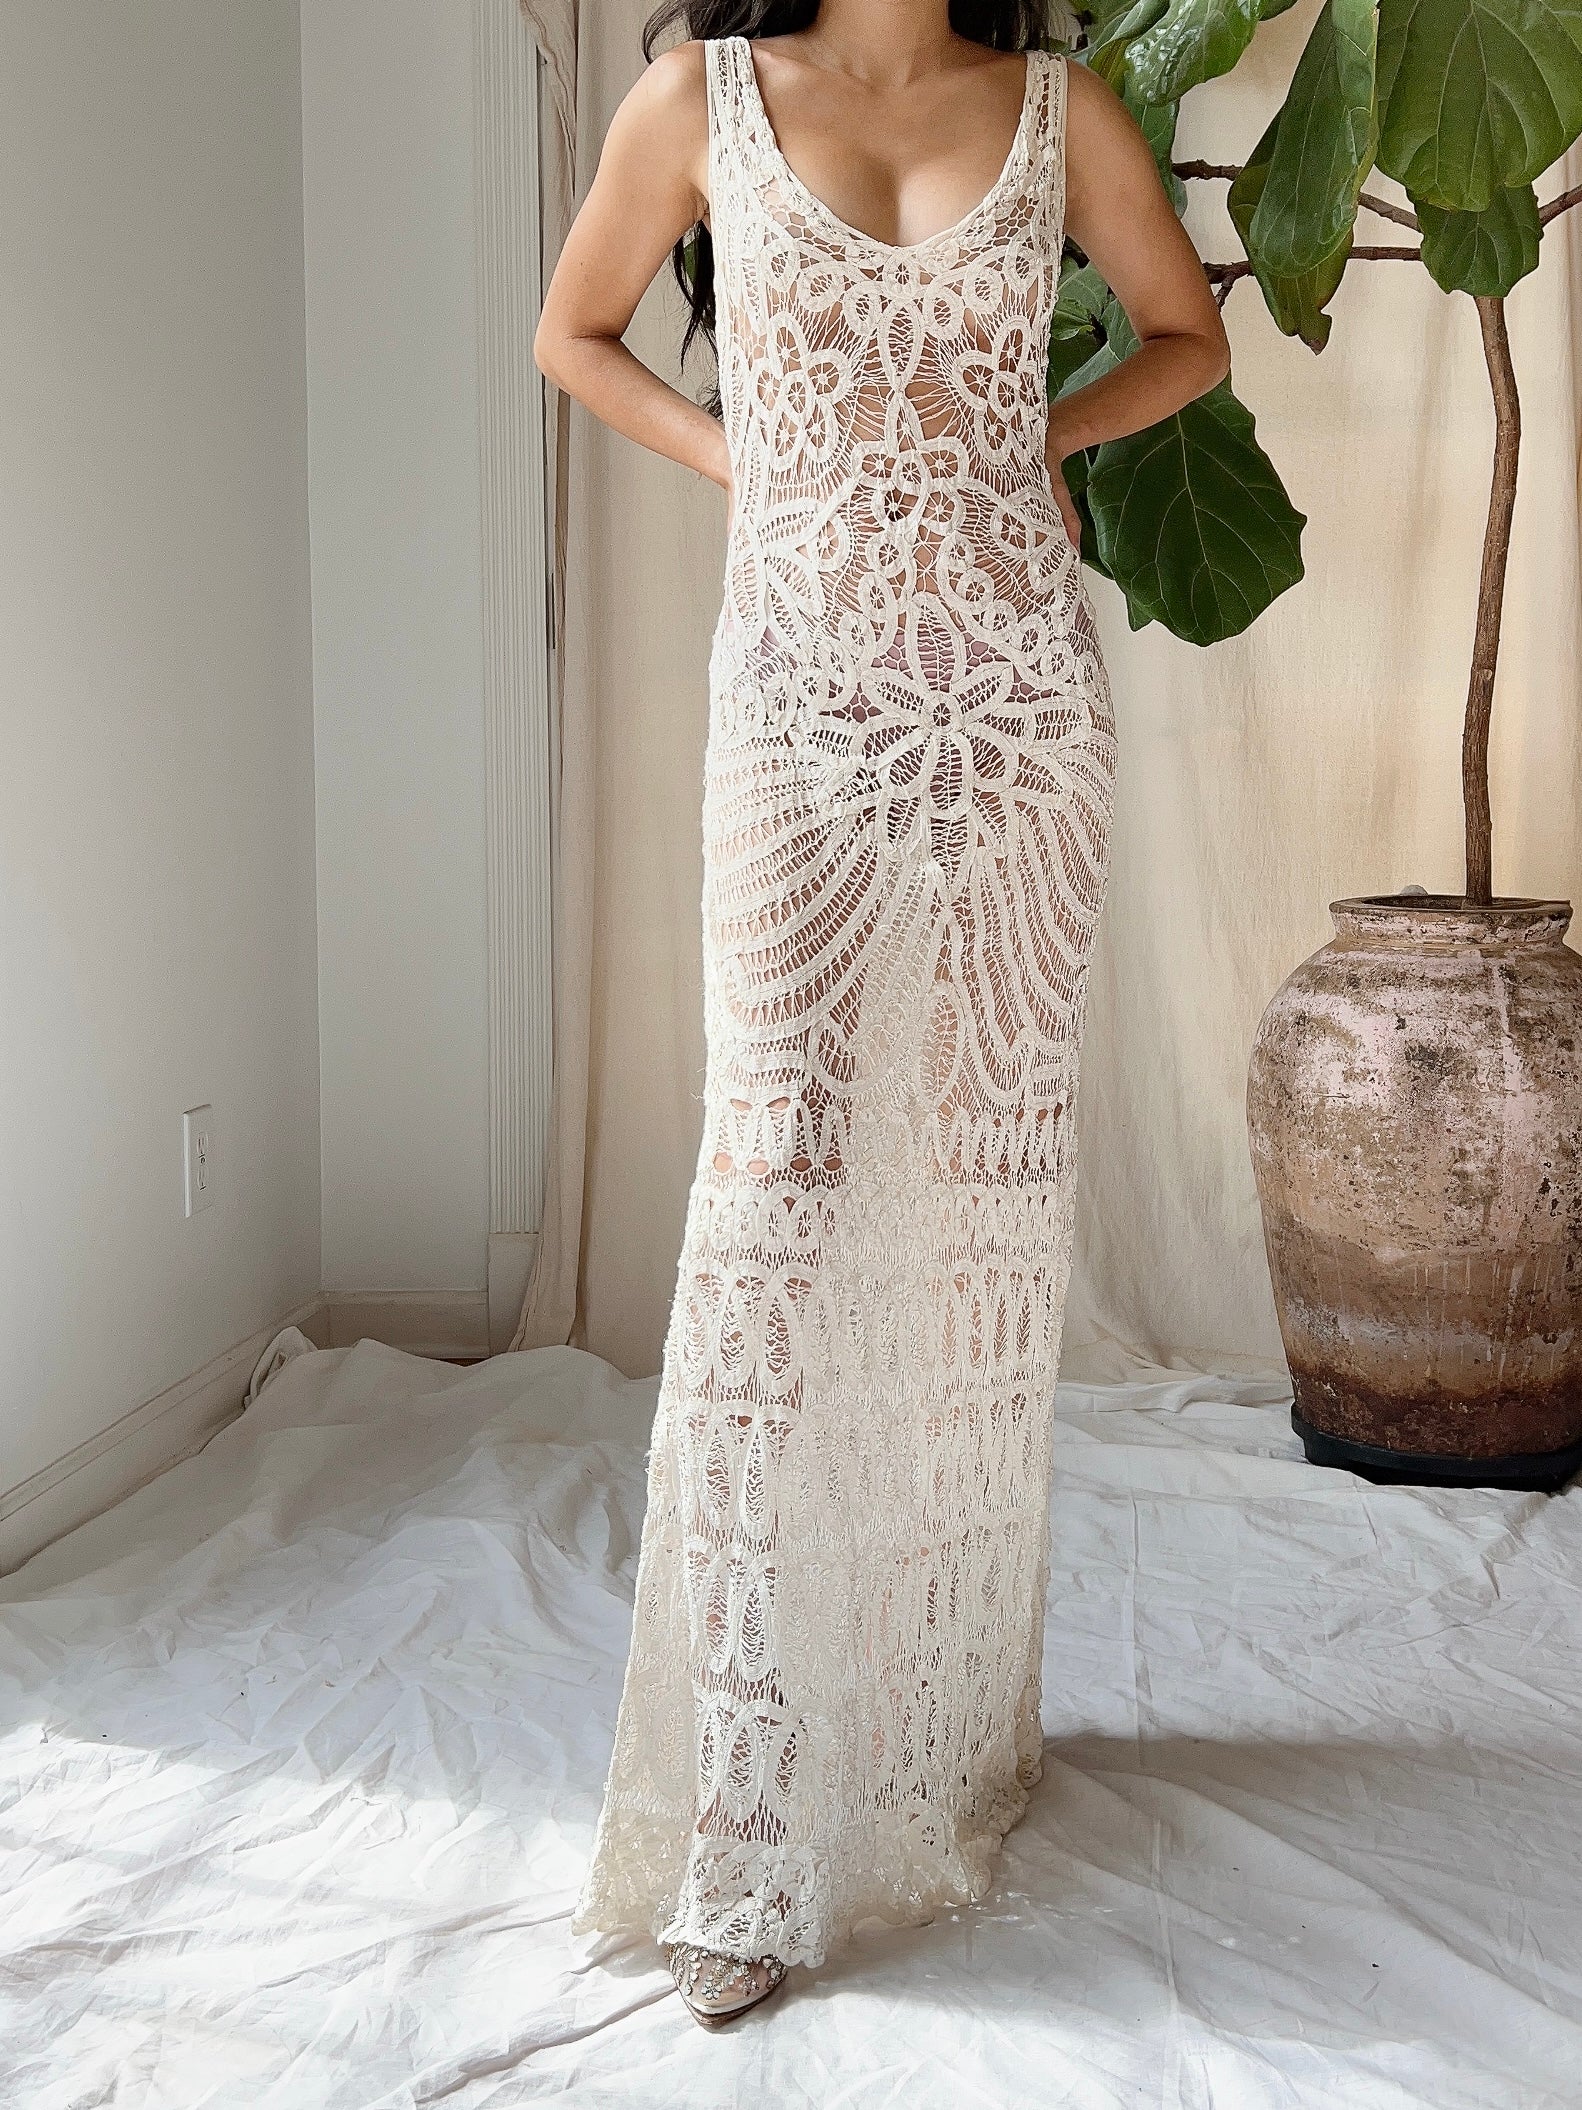 Handmade Crochet Wedding Dress/Cocktail Dress/ Party Dress